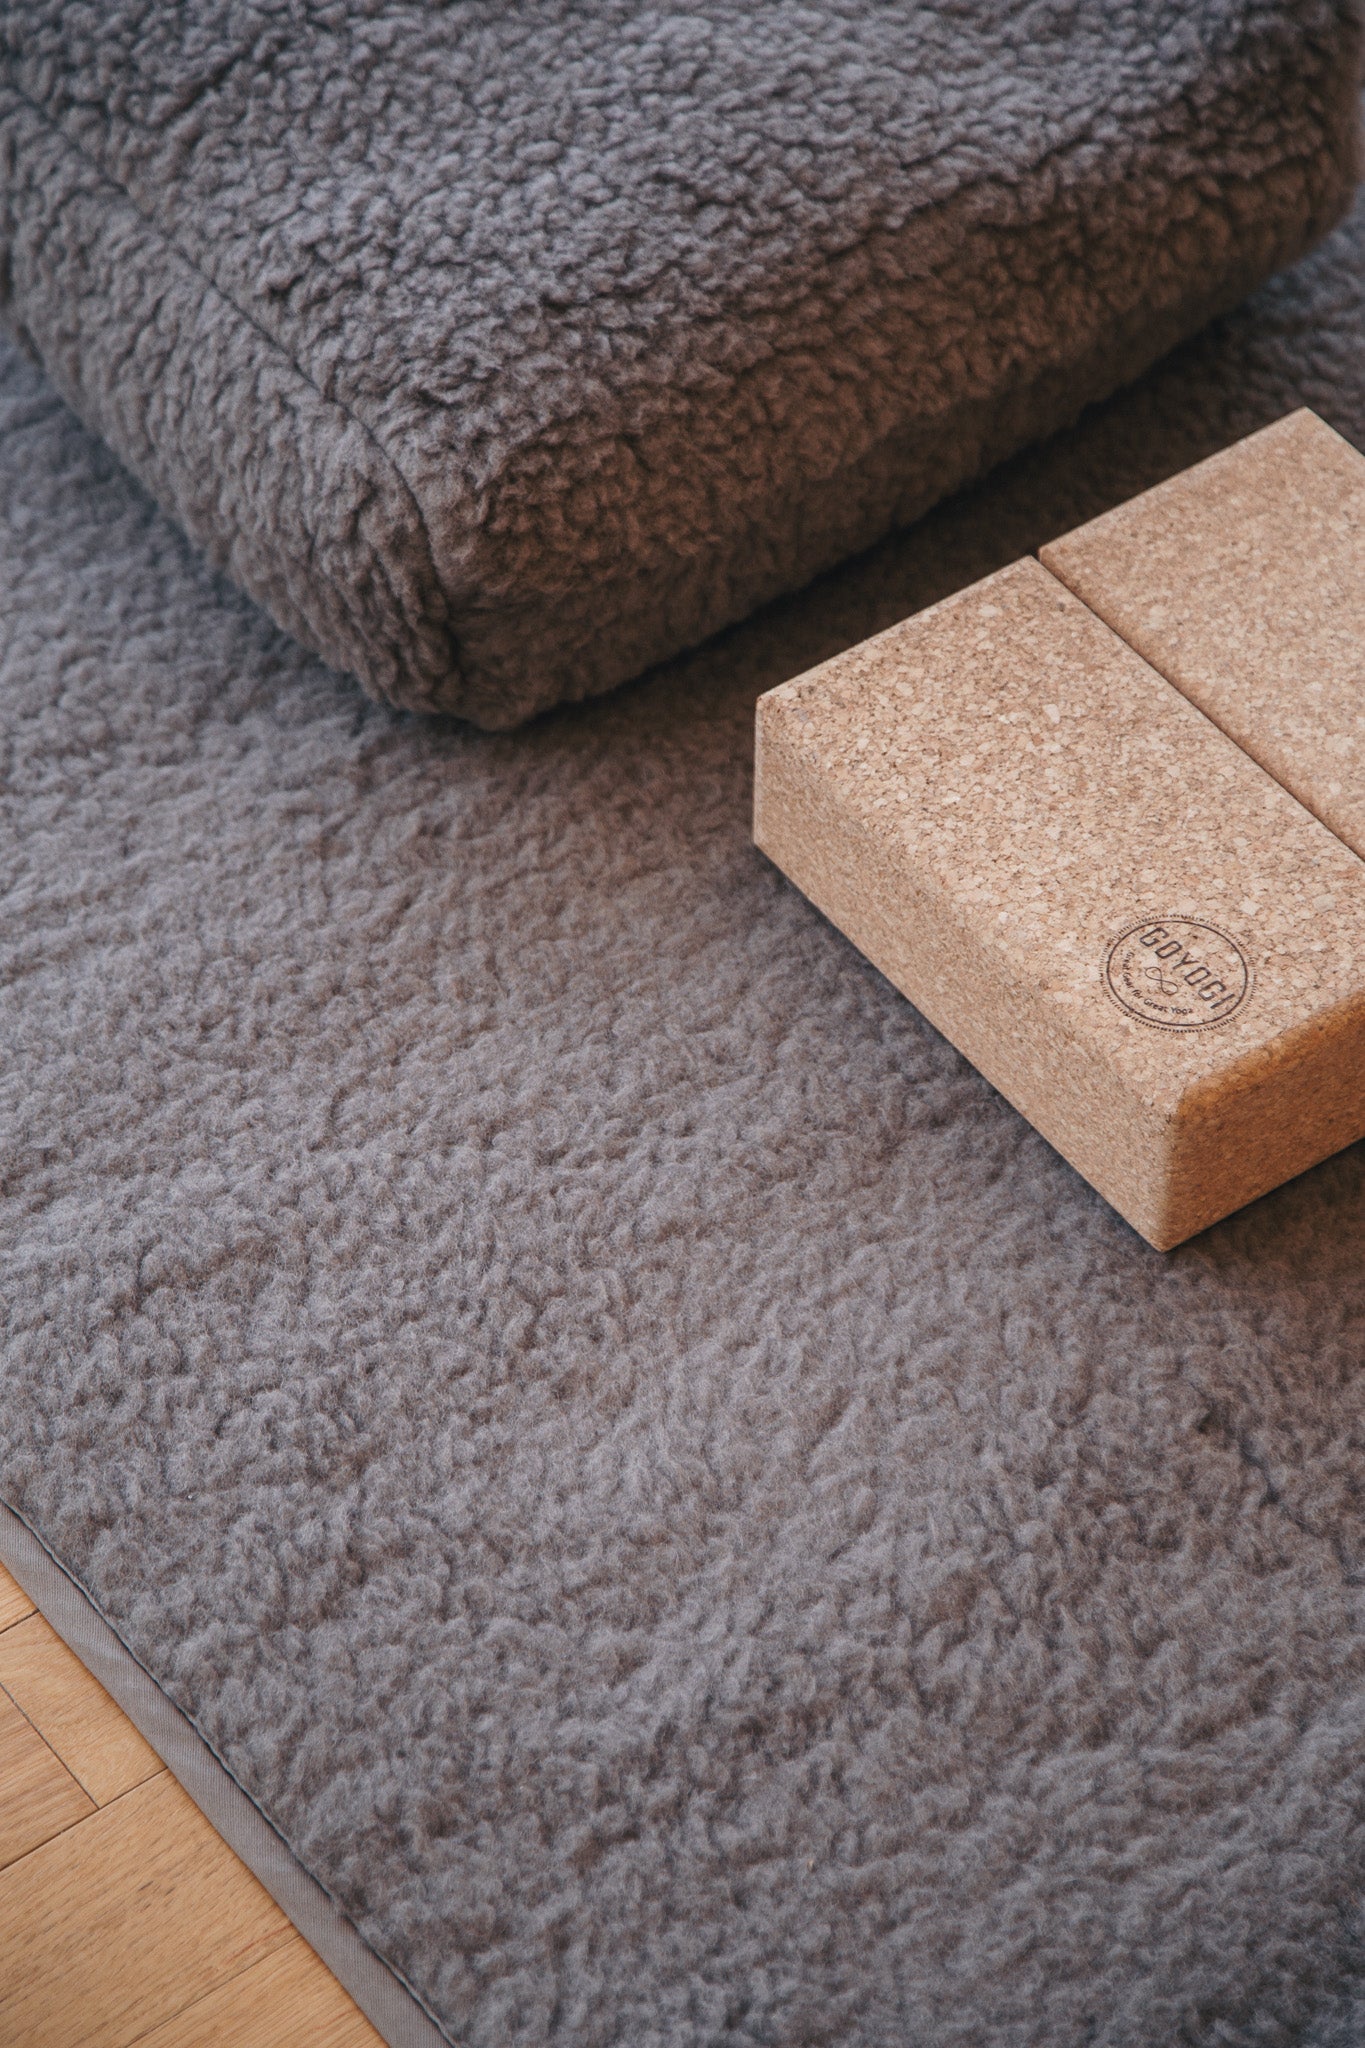 Release Wool Yoga Mat 75 x 200 cm - Light Brown